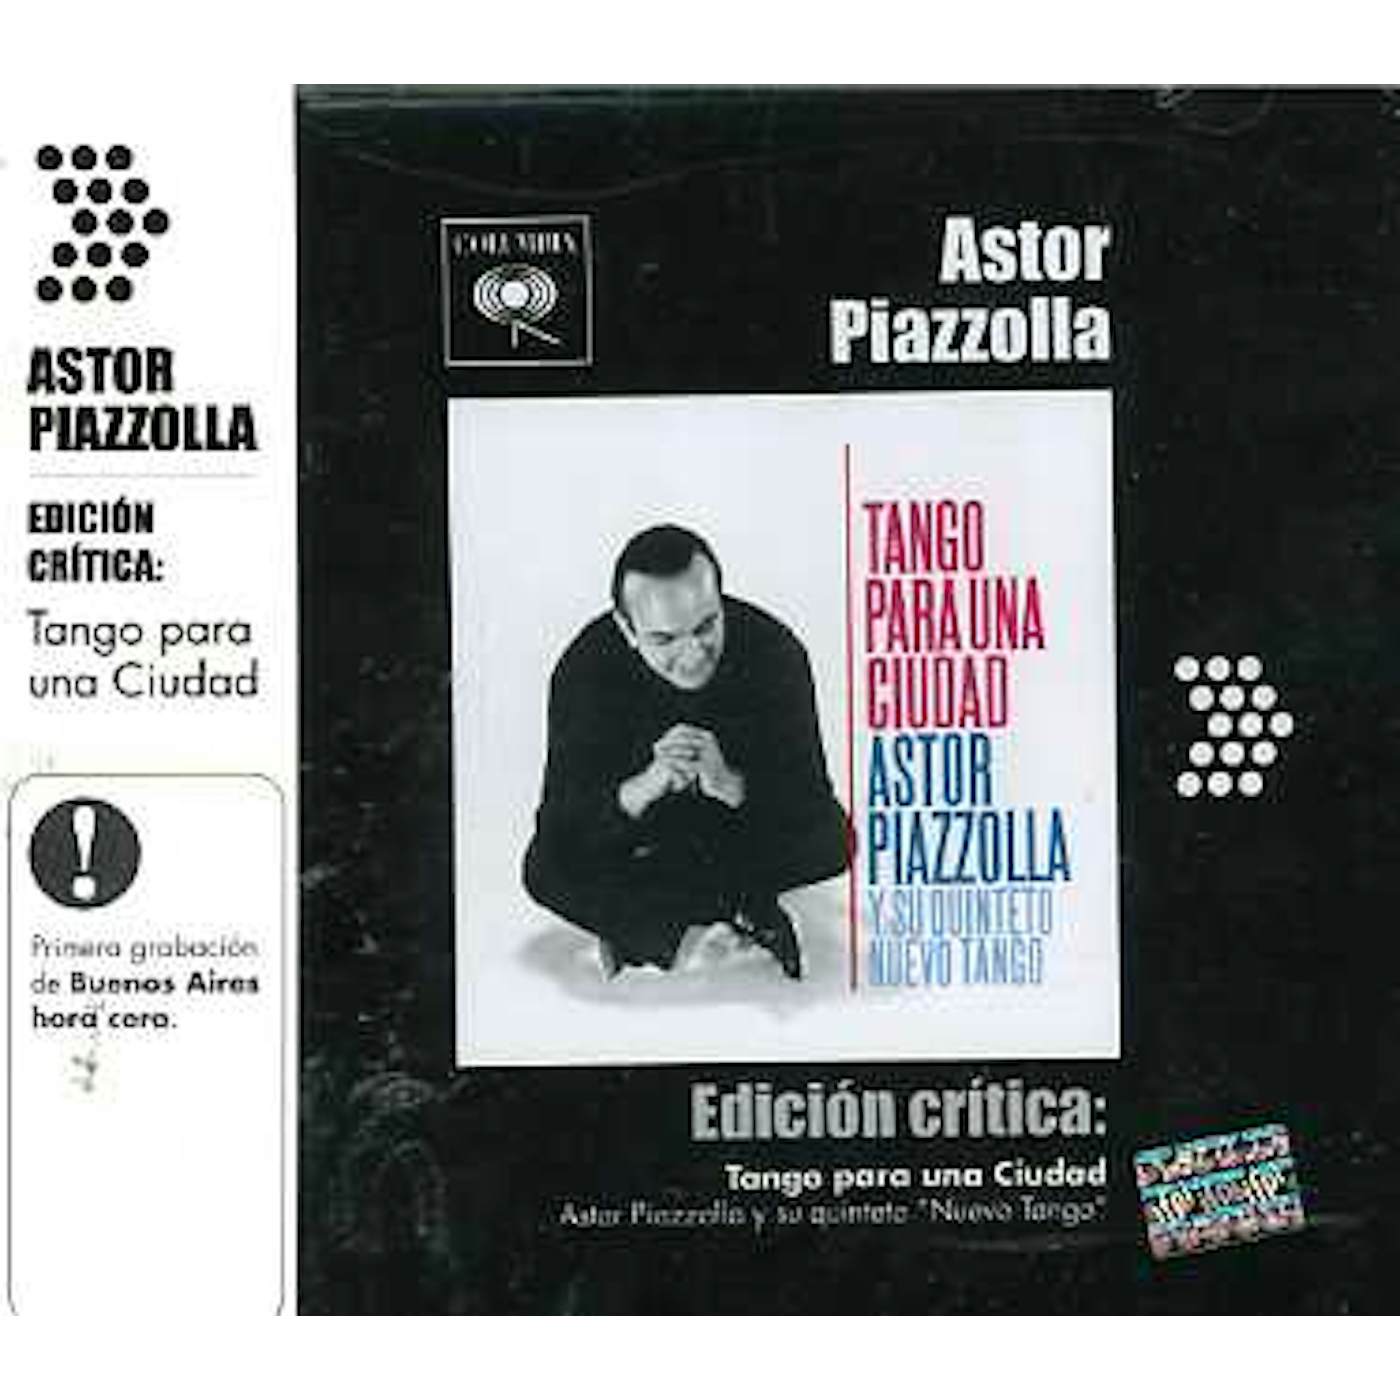 Astor Piazzolla TANGO PARA UNA CIUDAD CD